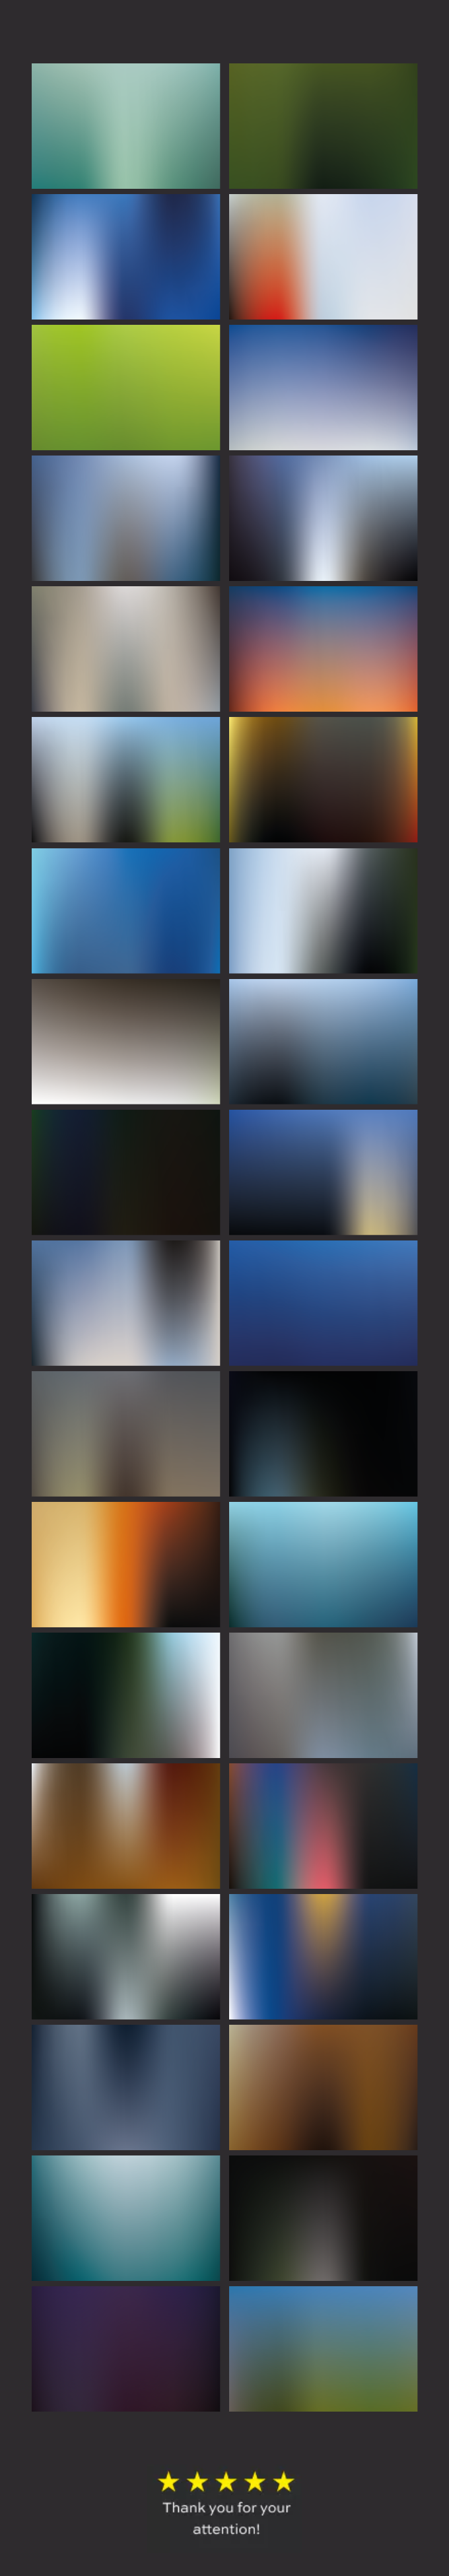 Premium Blur Backgrounds bundle